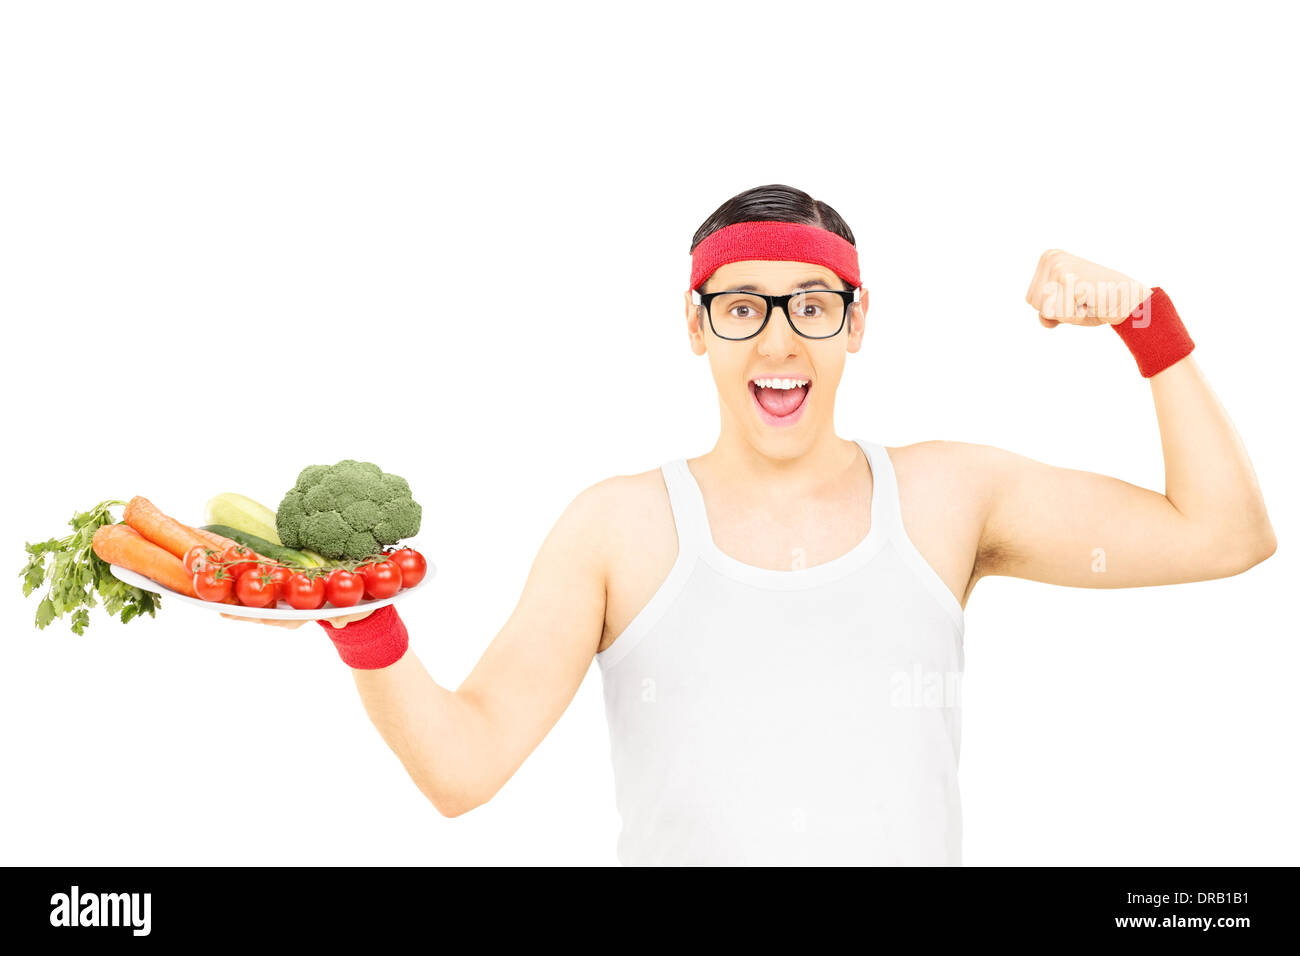 Da stupidi guy tenendo la piastra con verdure e mostrando il muscolo Foto Stock